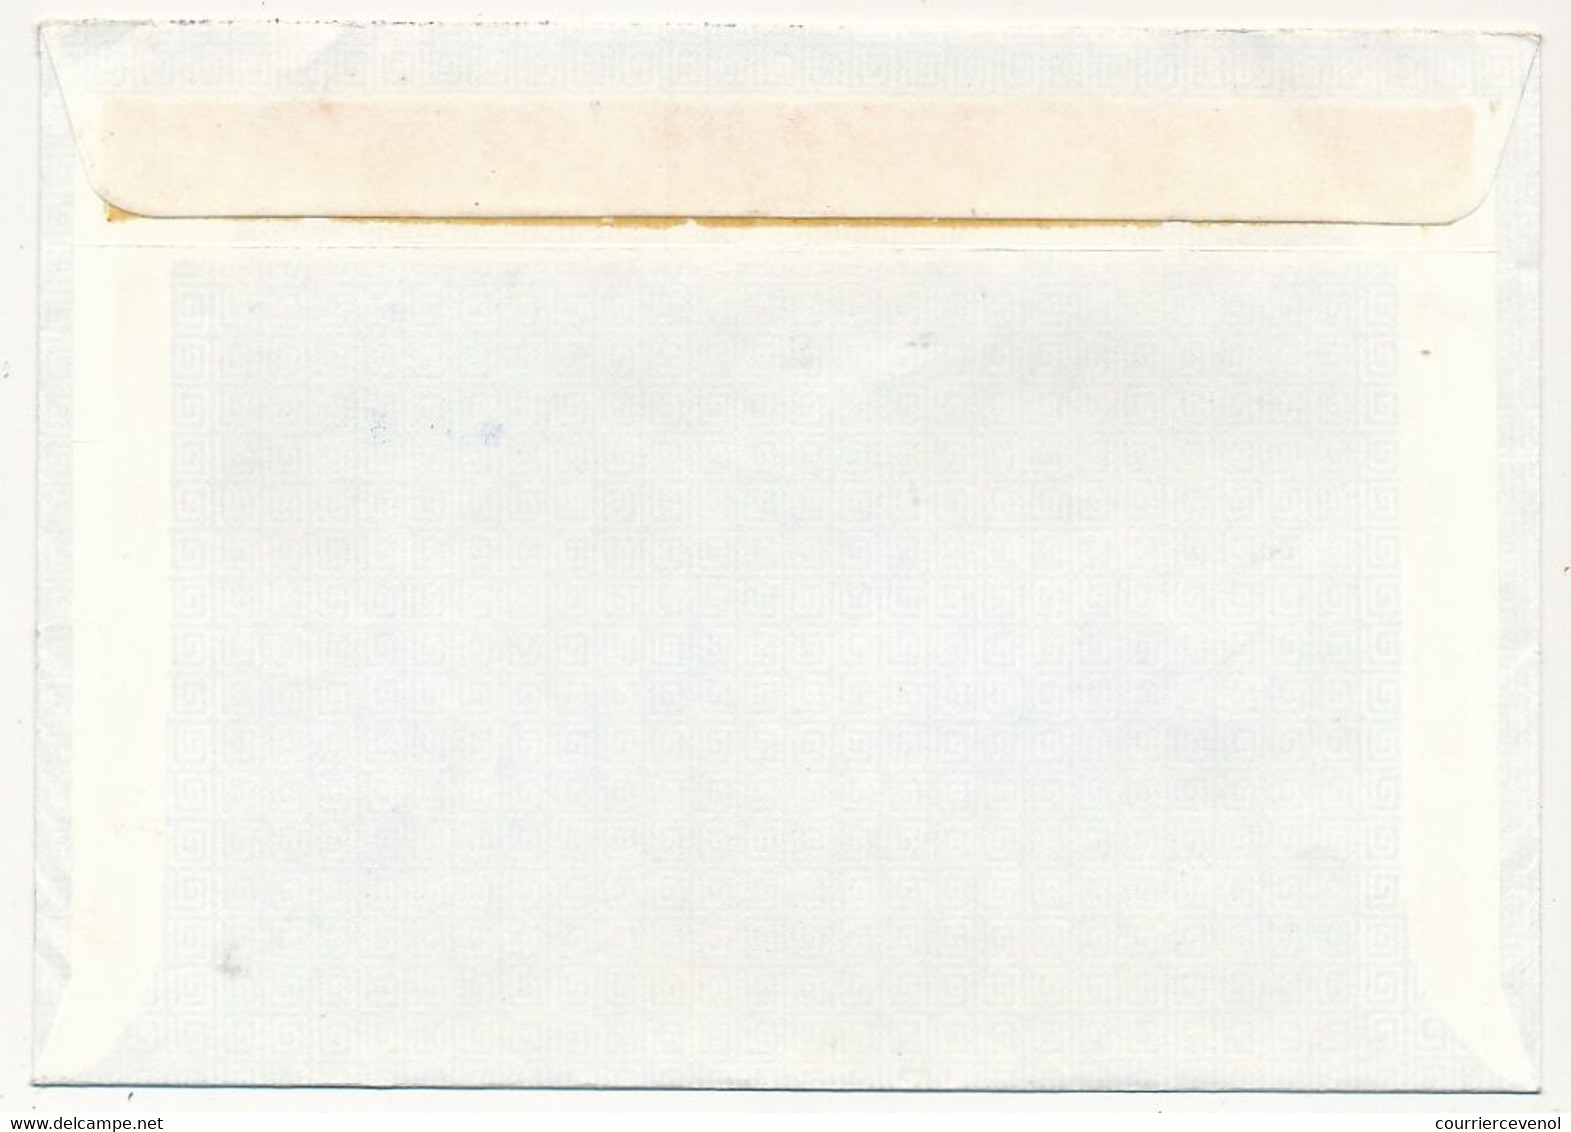 AUTRICHE - Enveloppe Affr Composé XII° Jeux Olympiques - Recommandée De 6840 Götzis - 7/4/1975 - Cartas & Documentos